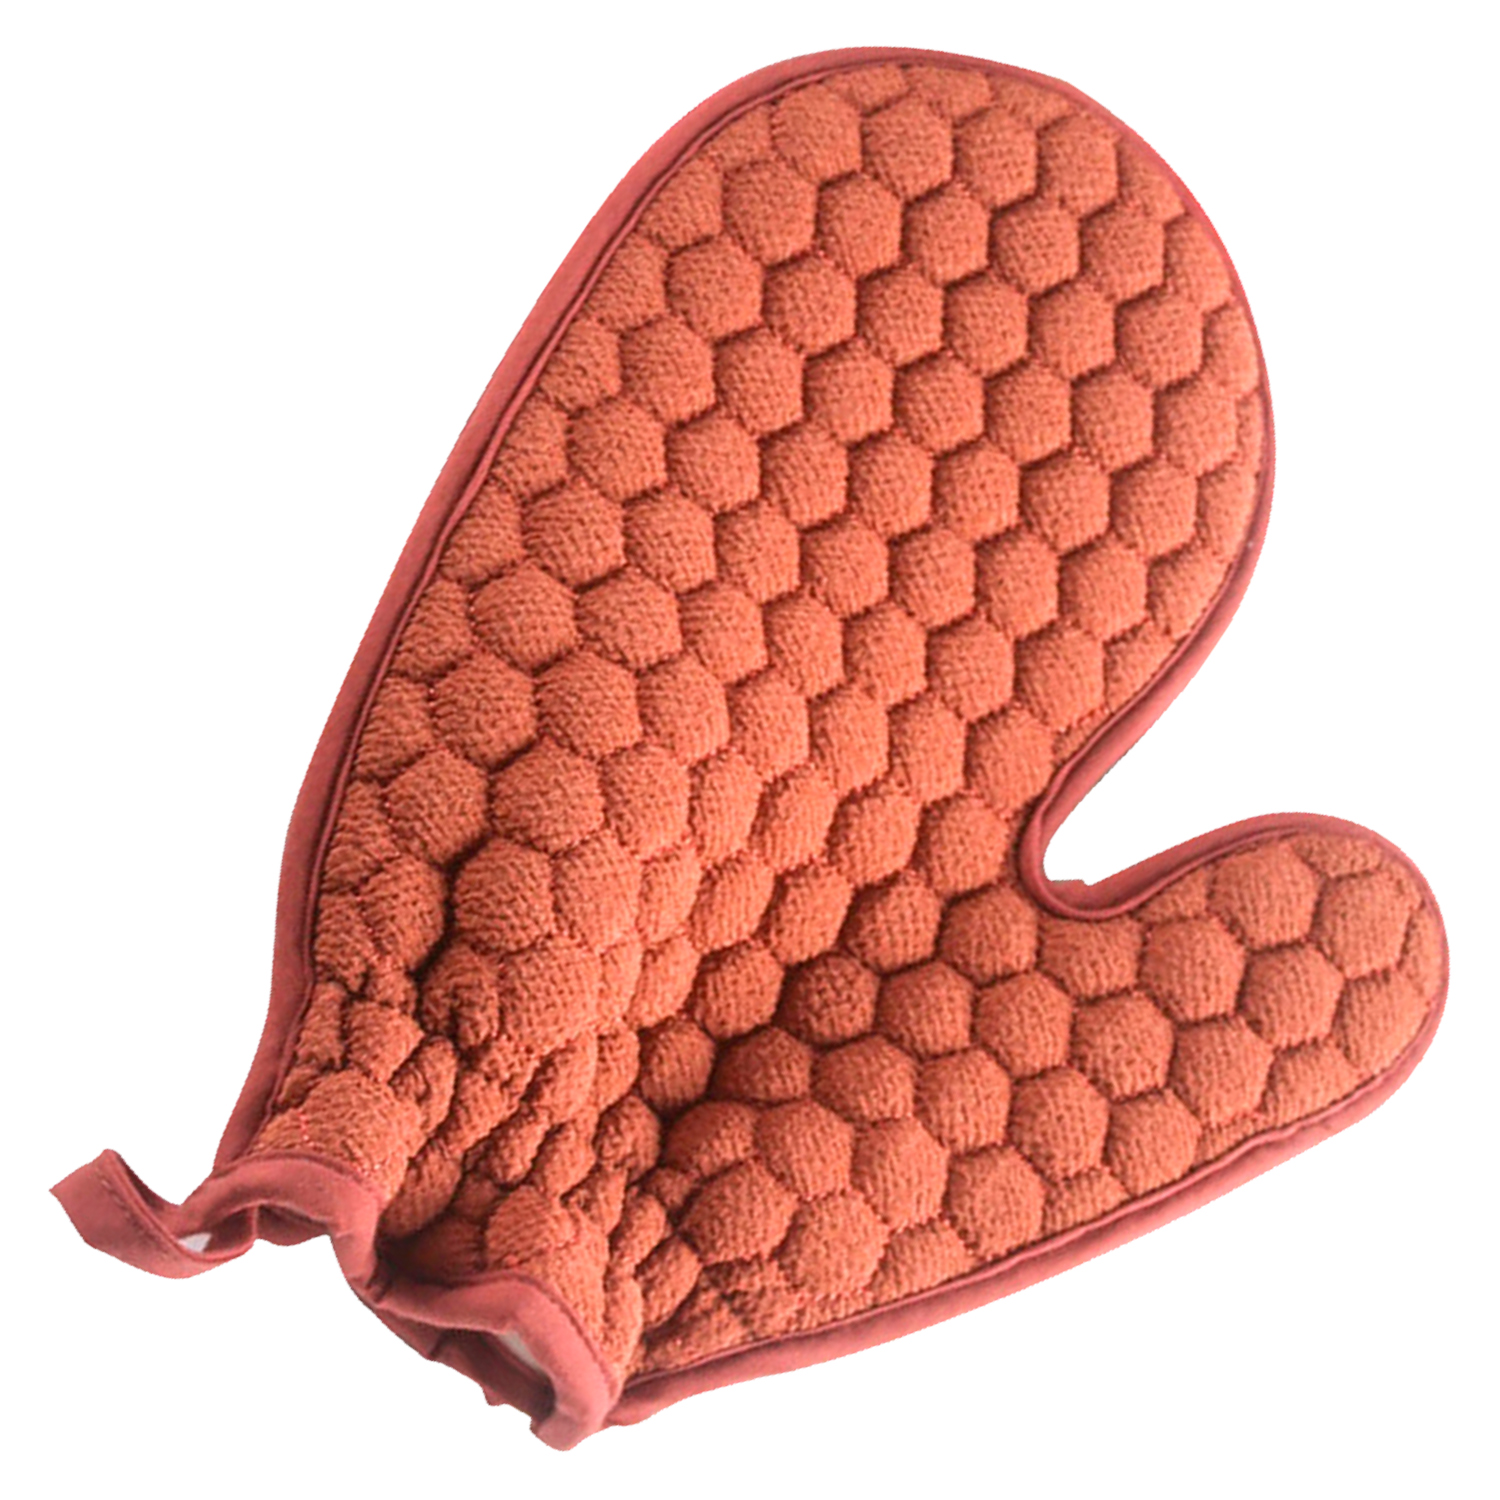 Мочалка-рукавица, VenusShape, цвет красно-оранжевый, 23х14 см комбинезон легкий для собак тузик такса кроличья самка полиэстер ной